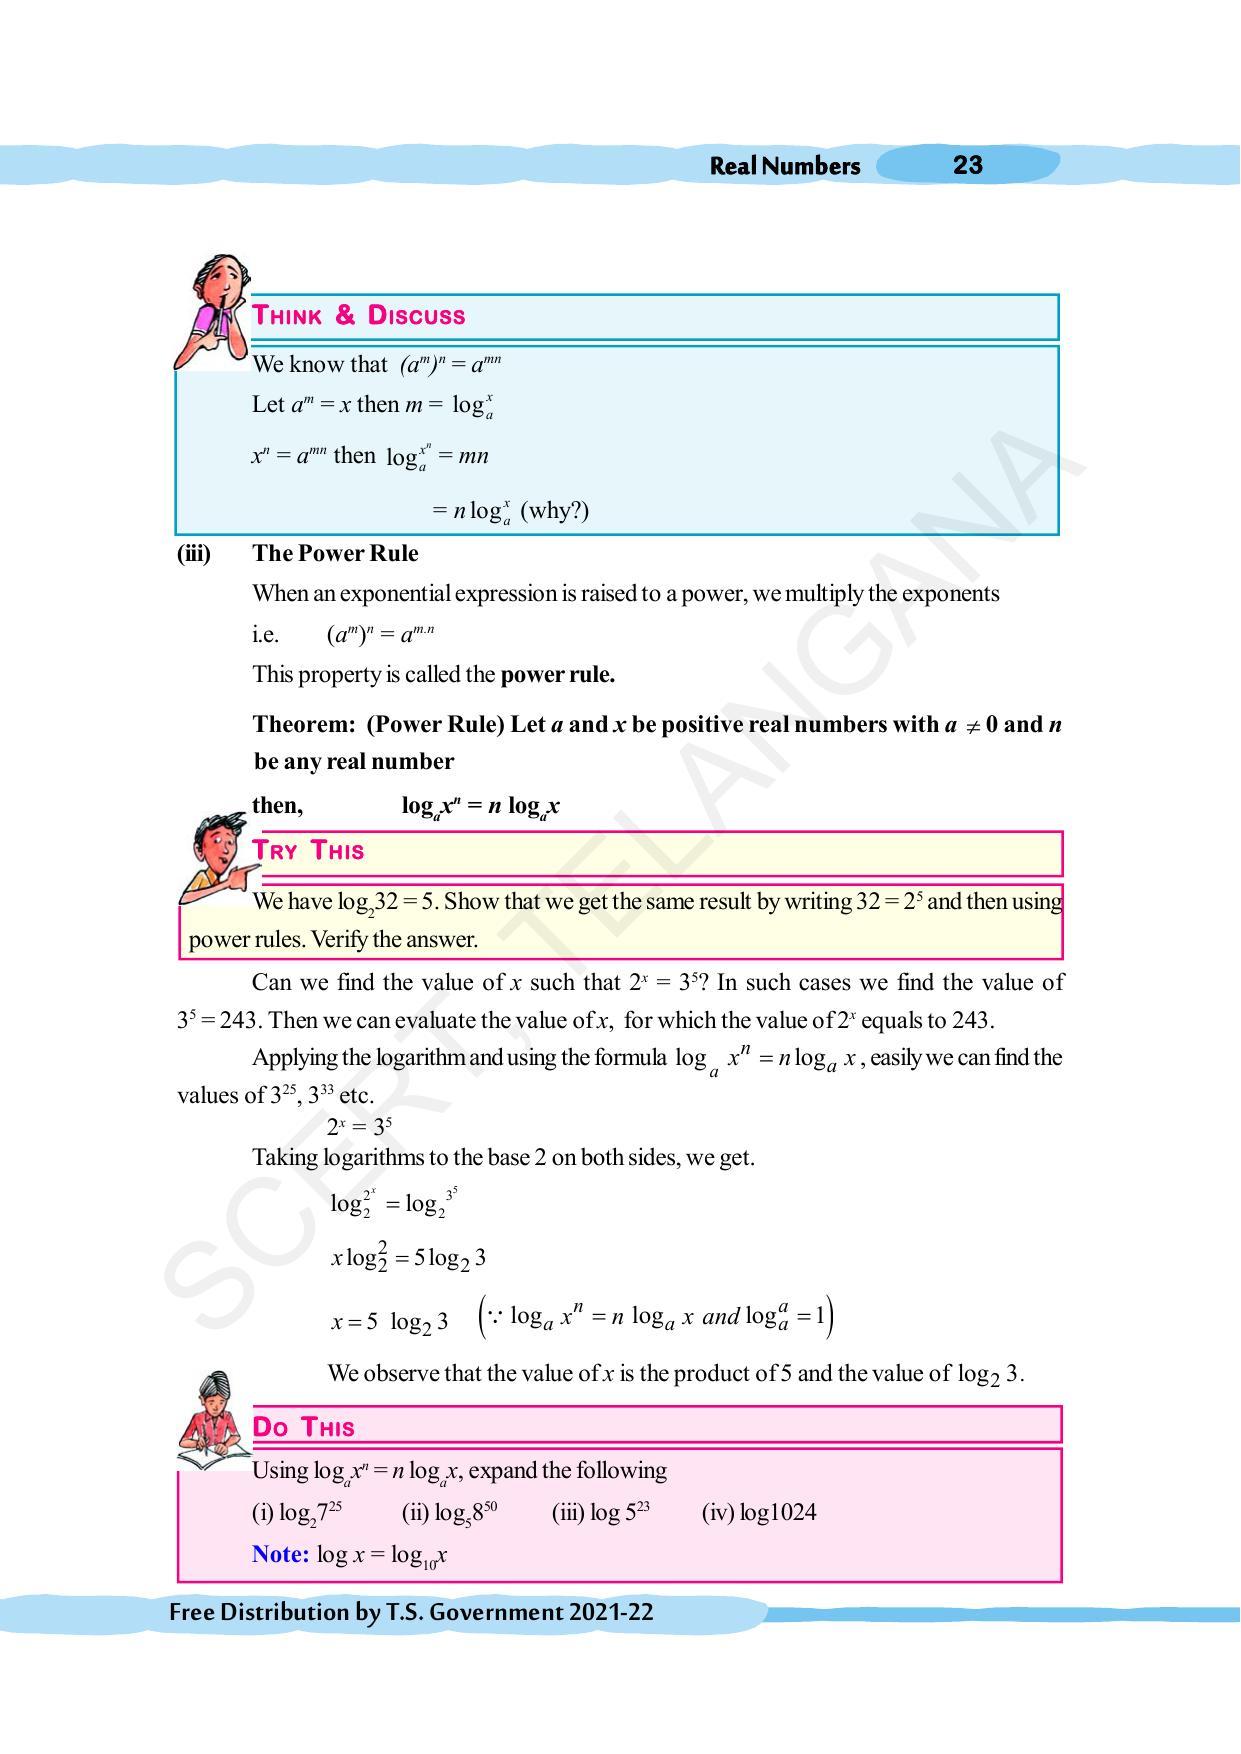 TS SCERT Class 10 Maths (English Medium) Text Book - Page 33